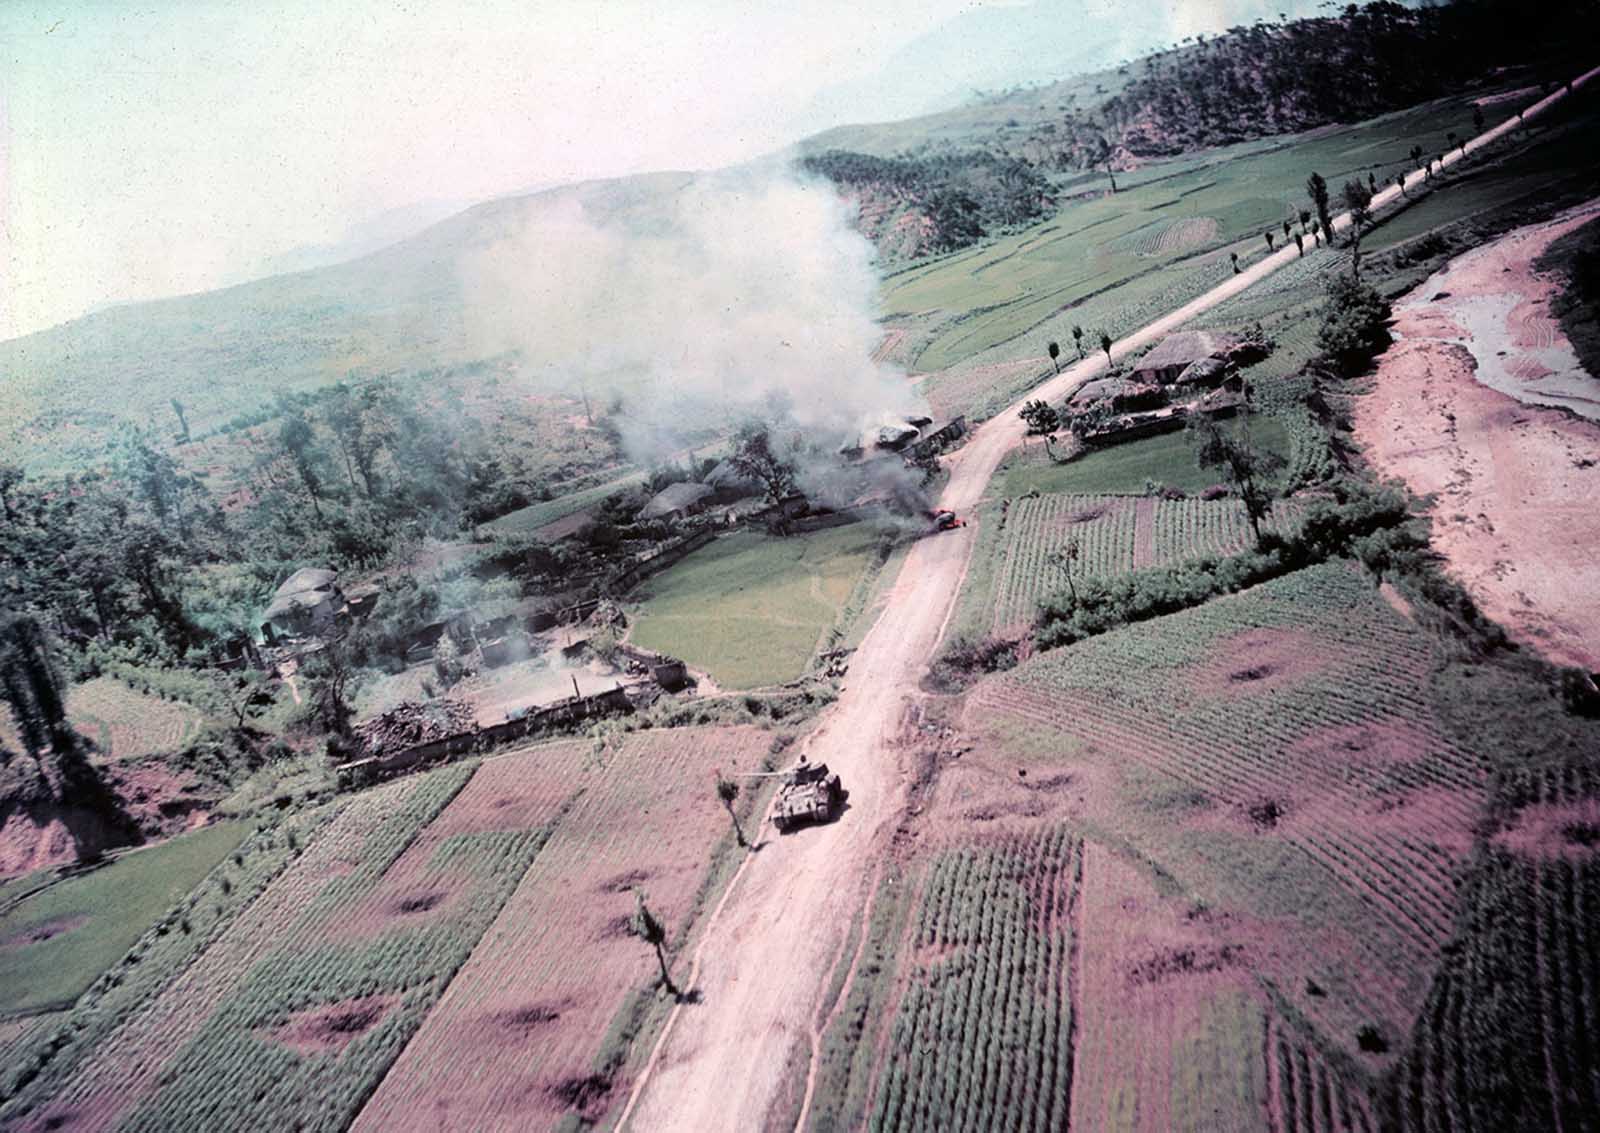 La guerre de Corée en images rares, 1951-1953